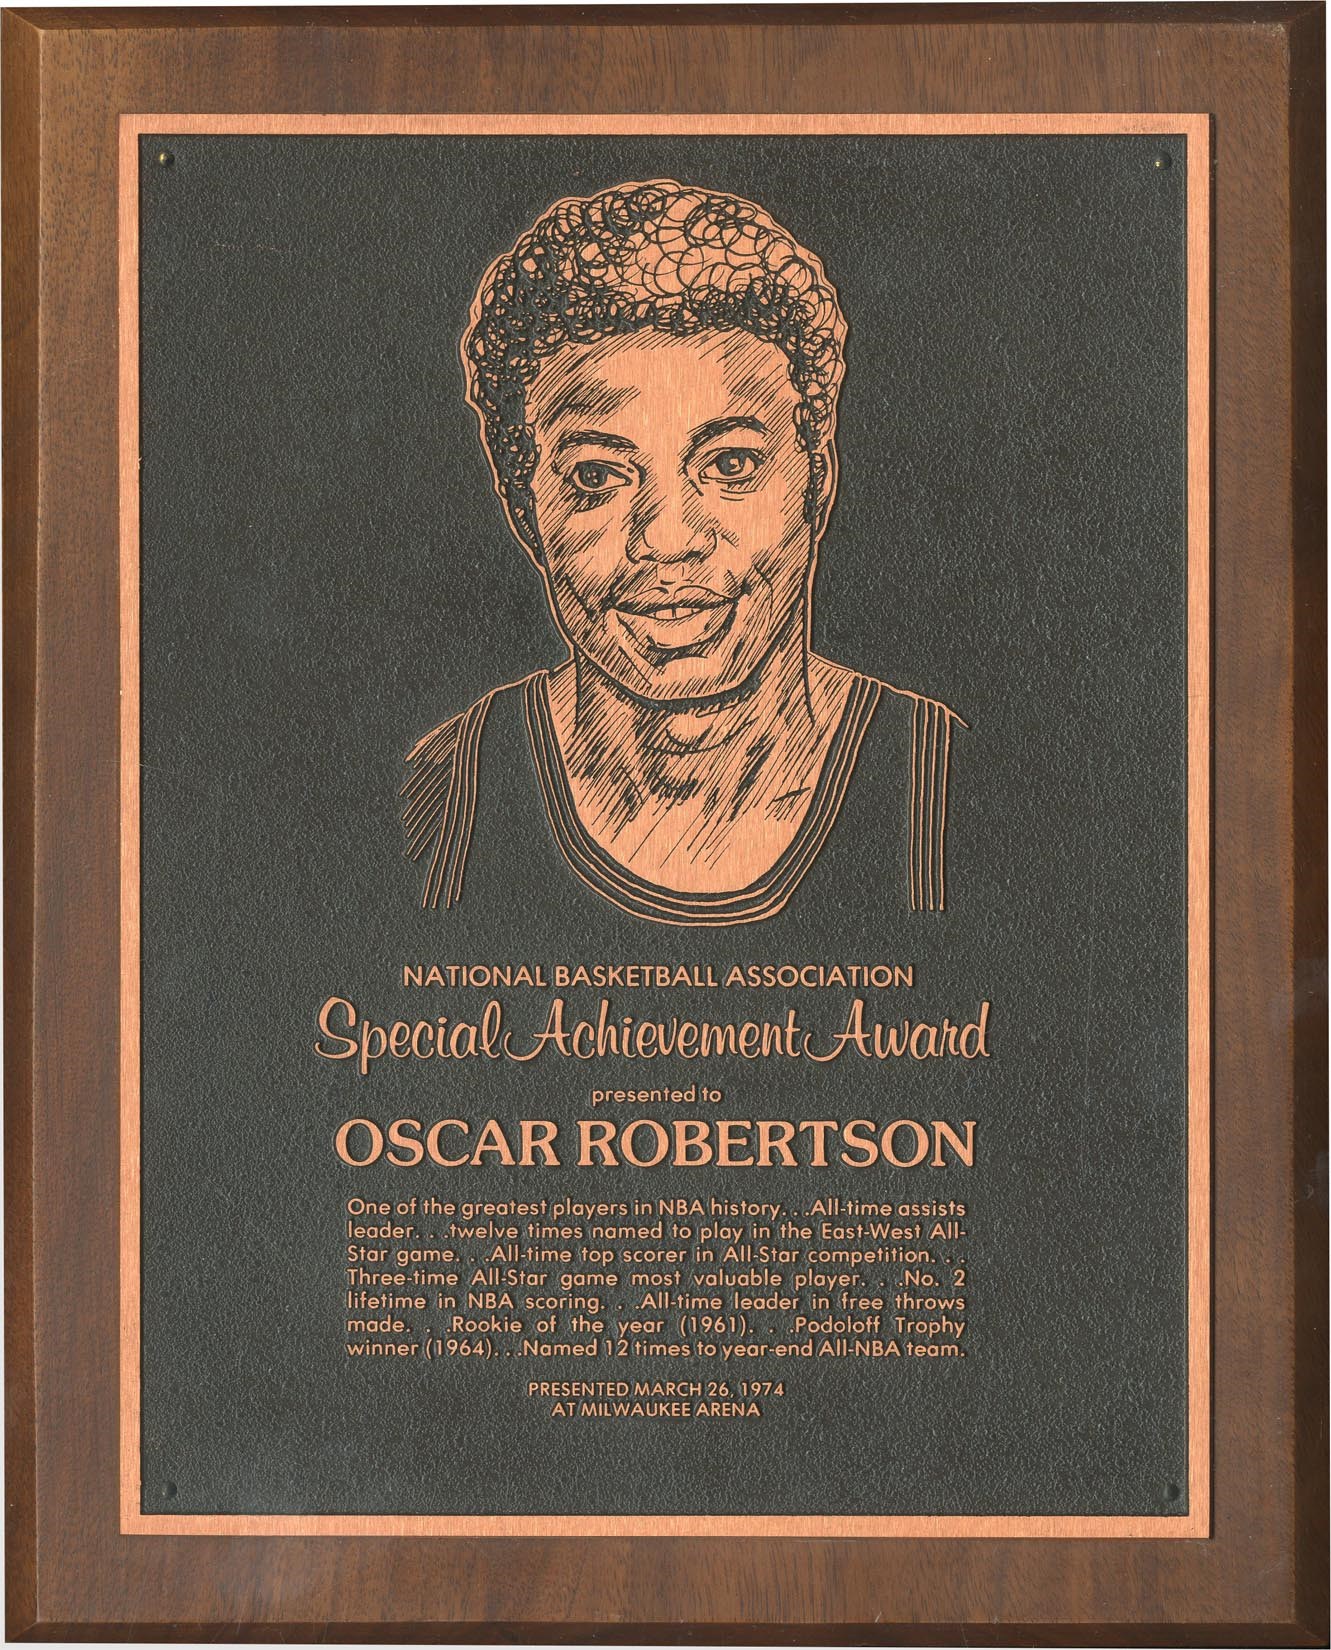 1974 Oscar Robertson NBA Special Acheivement Award